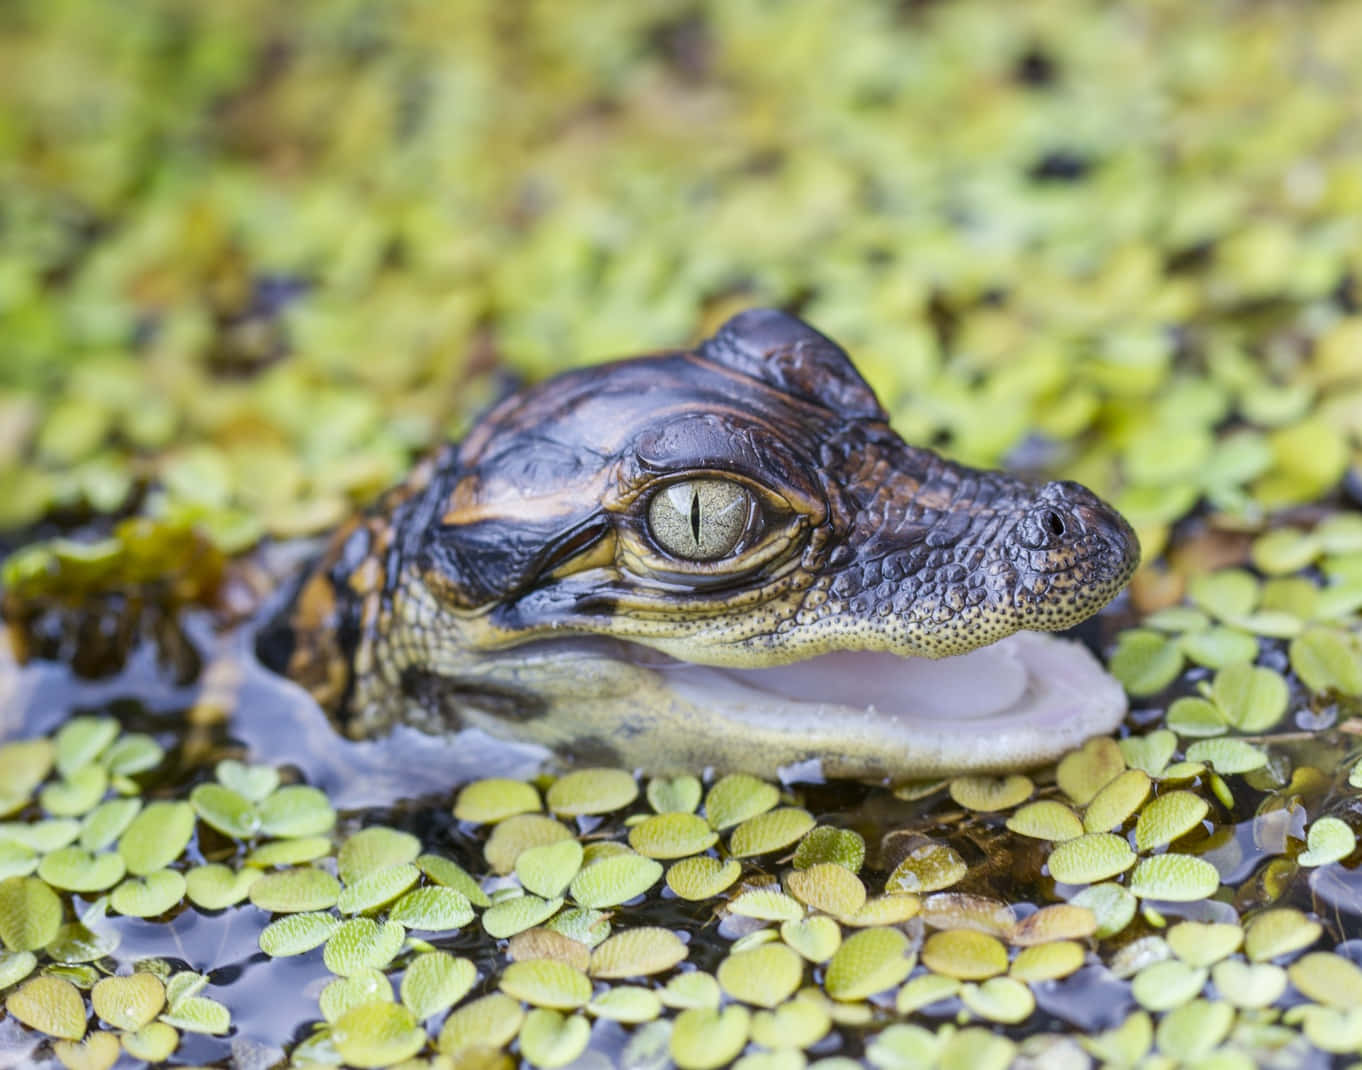 A Close-Up of an Alligator